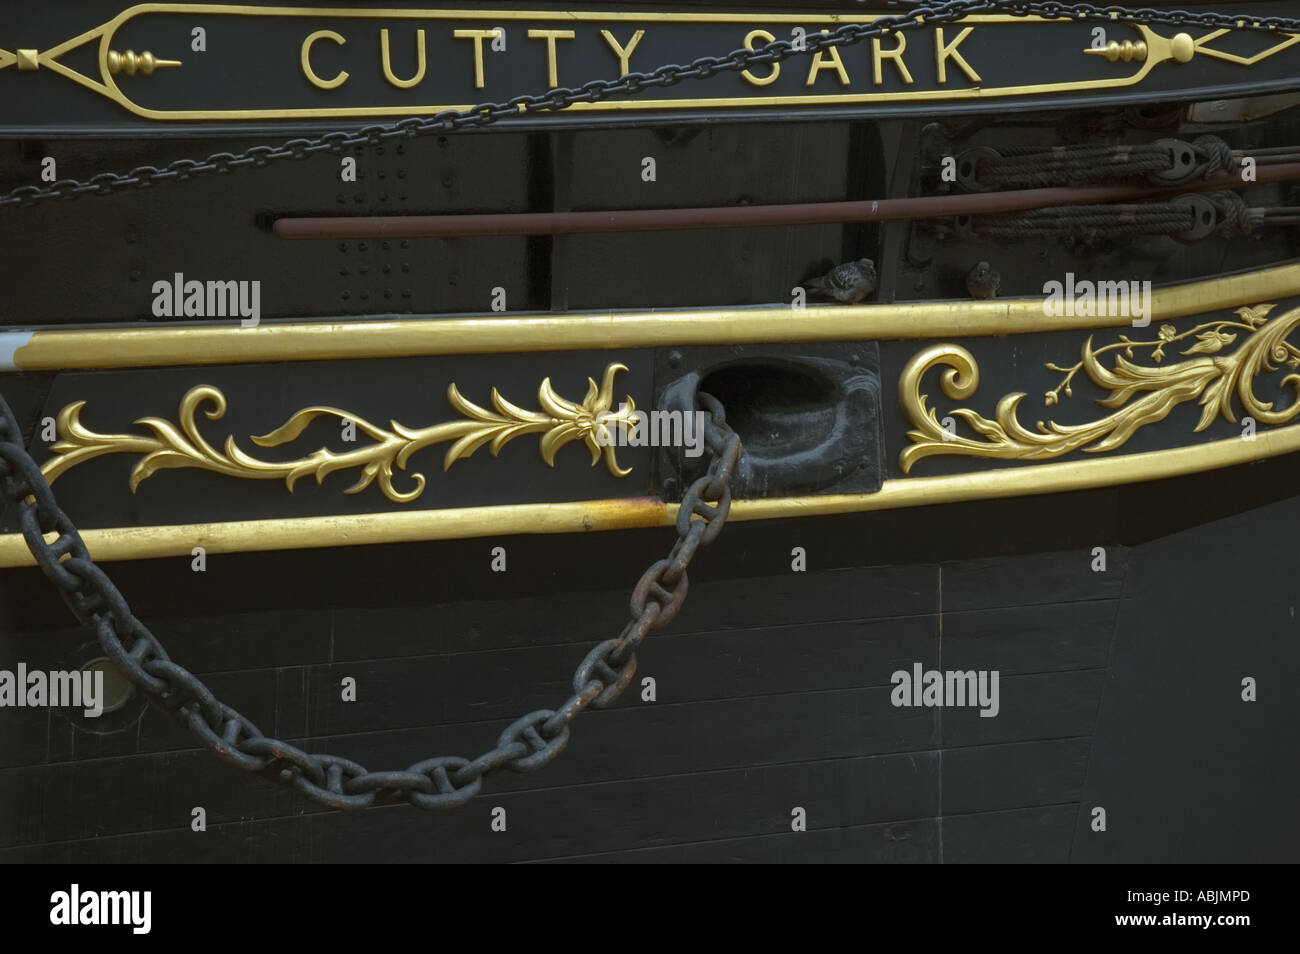 Cutty Sark ship Greenwich London UK Stock Photo